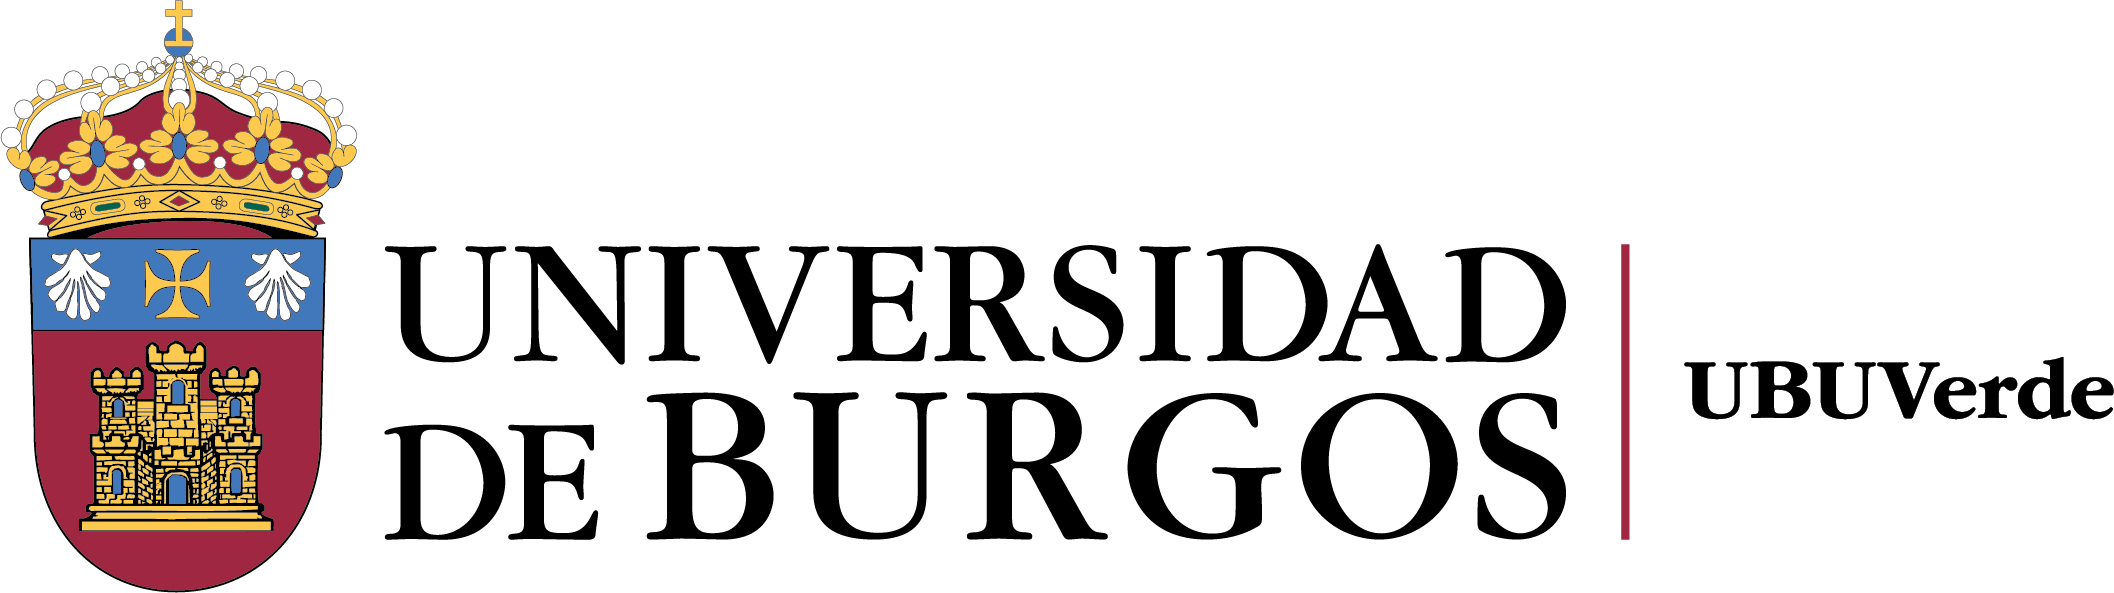 Logo ubuverde